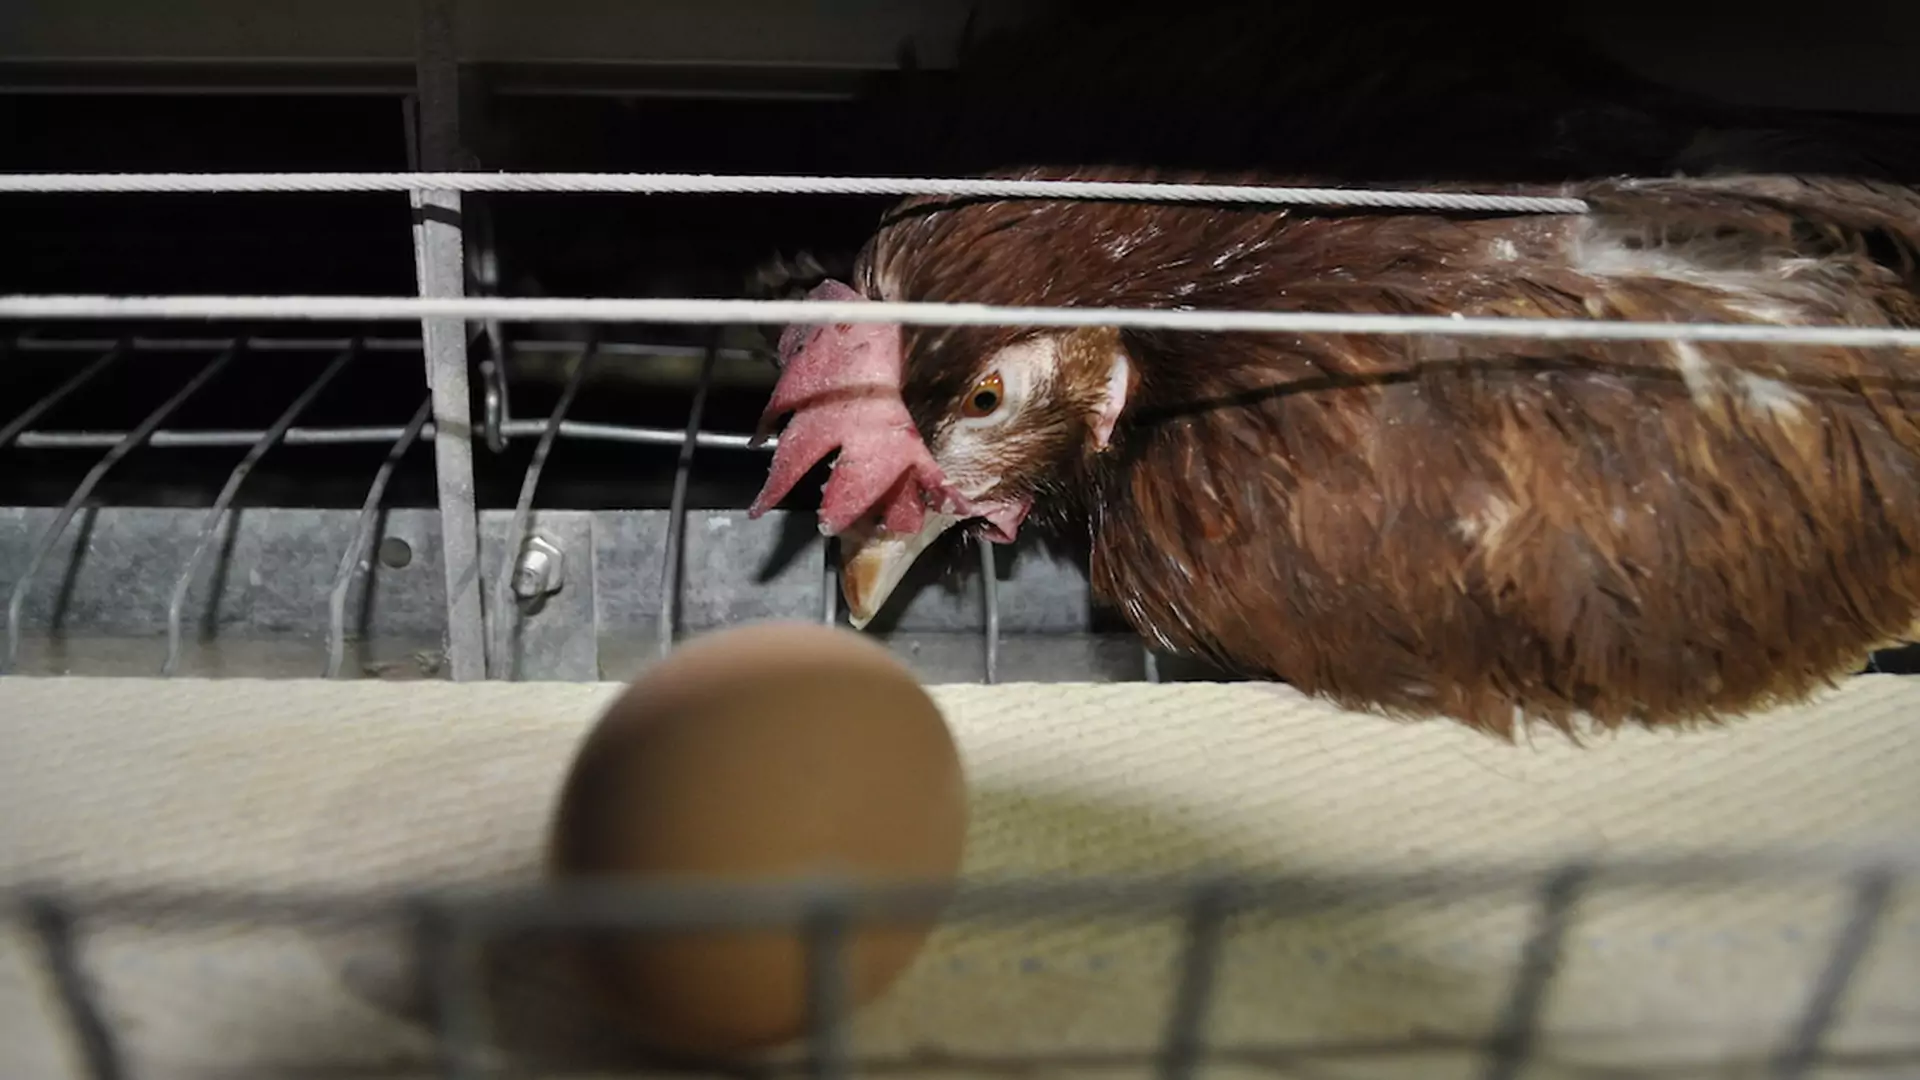 Jajka trójki nie są symbolem nowego życia, tylko cierpienia 41 mln kur